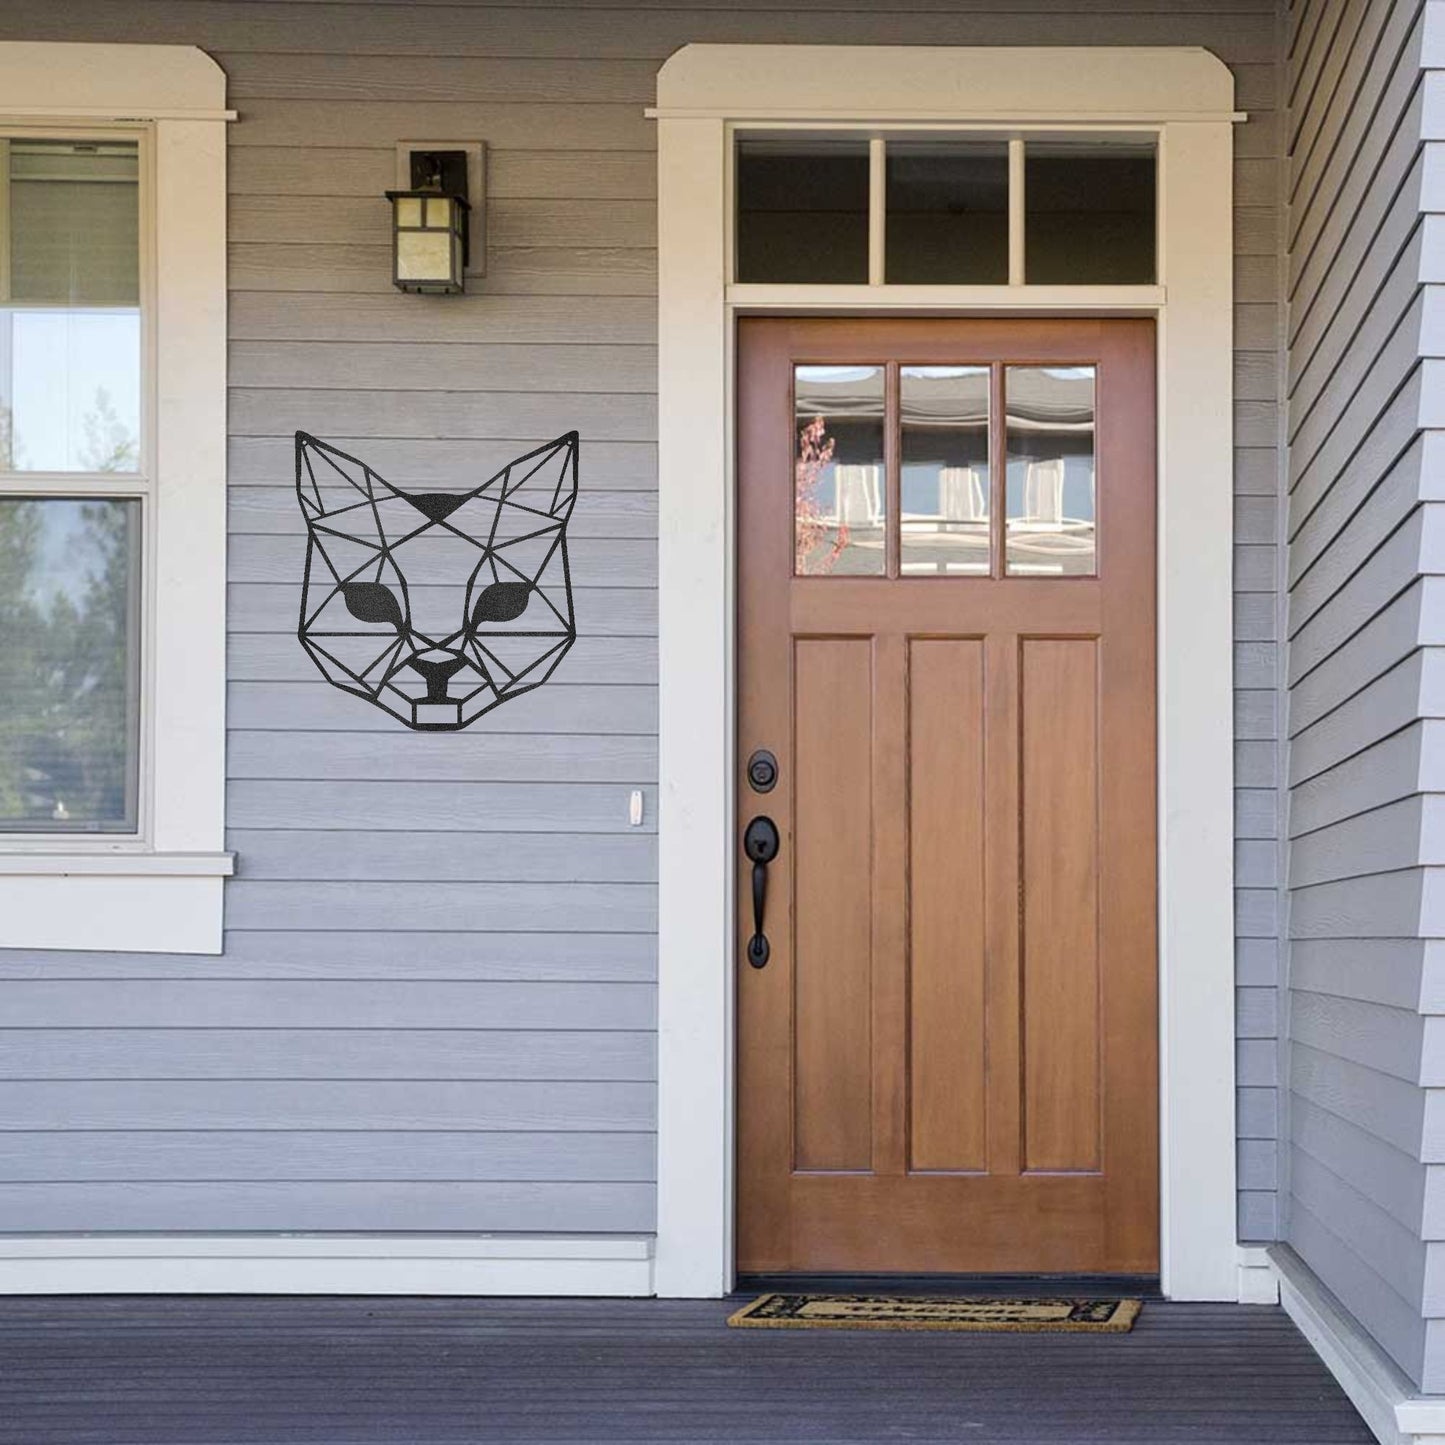 Cat Geometric Indoor Outdoor Steel Wall Sign